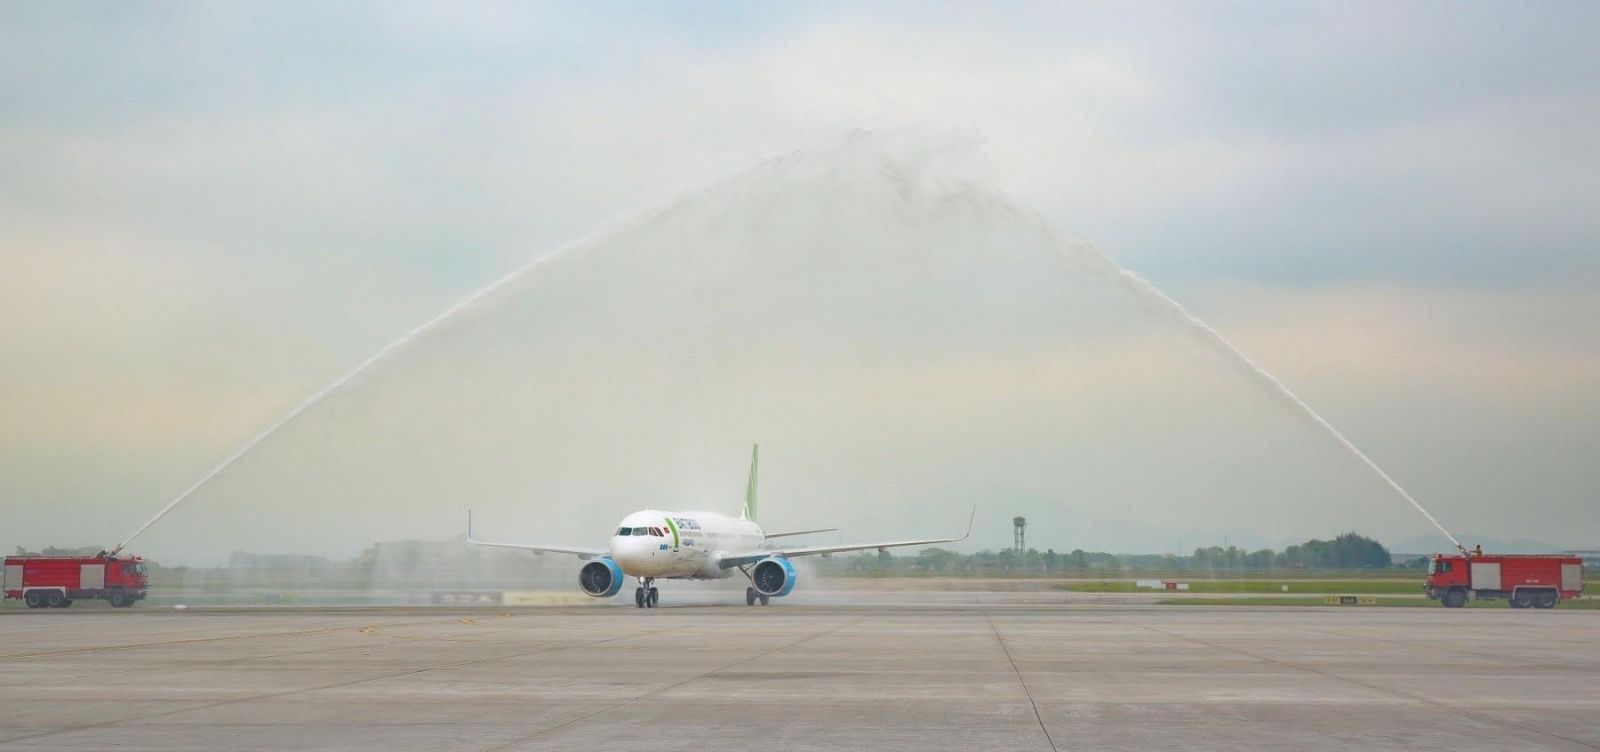 Bamboo Airways khai trương đường bay nối Hà Nội với thành phố Rạch Giá, tỉnh Kiên Giang.